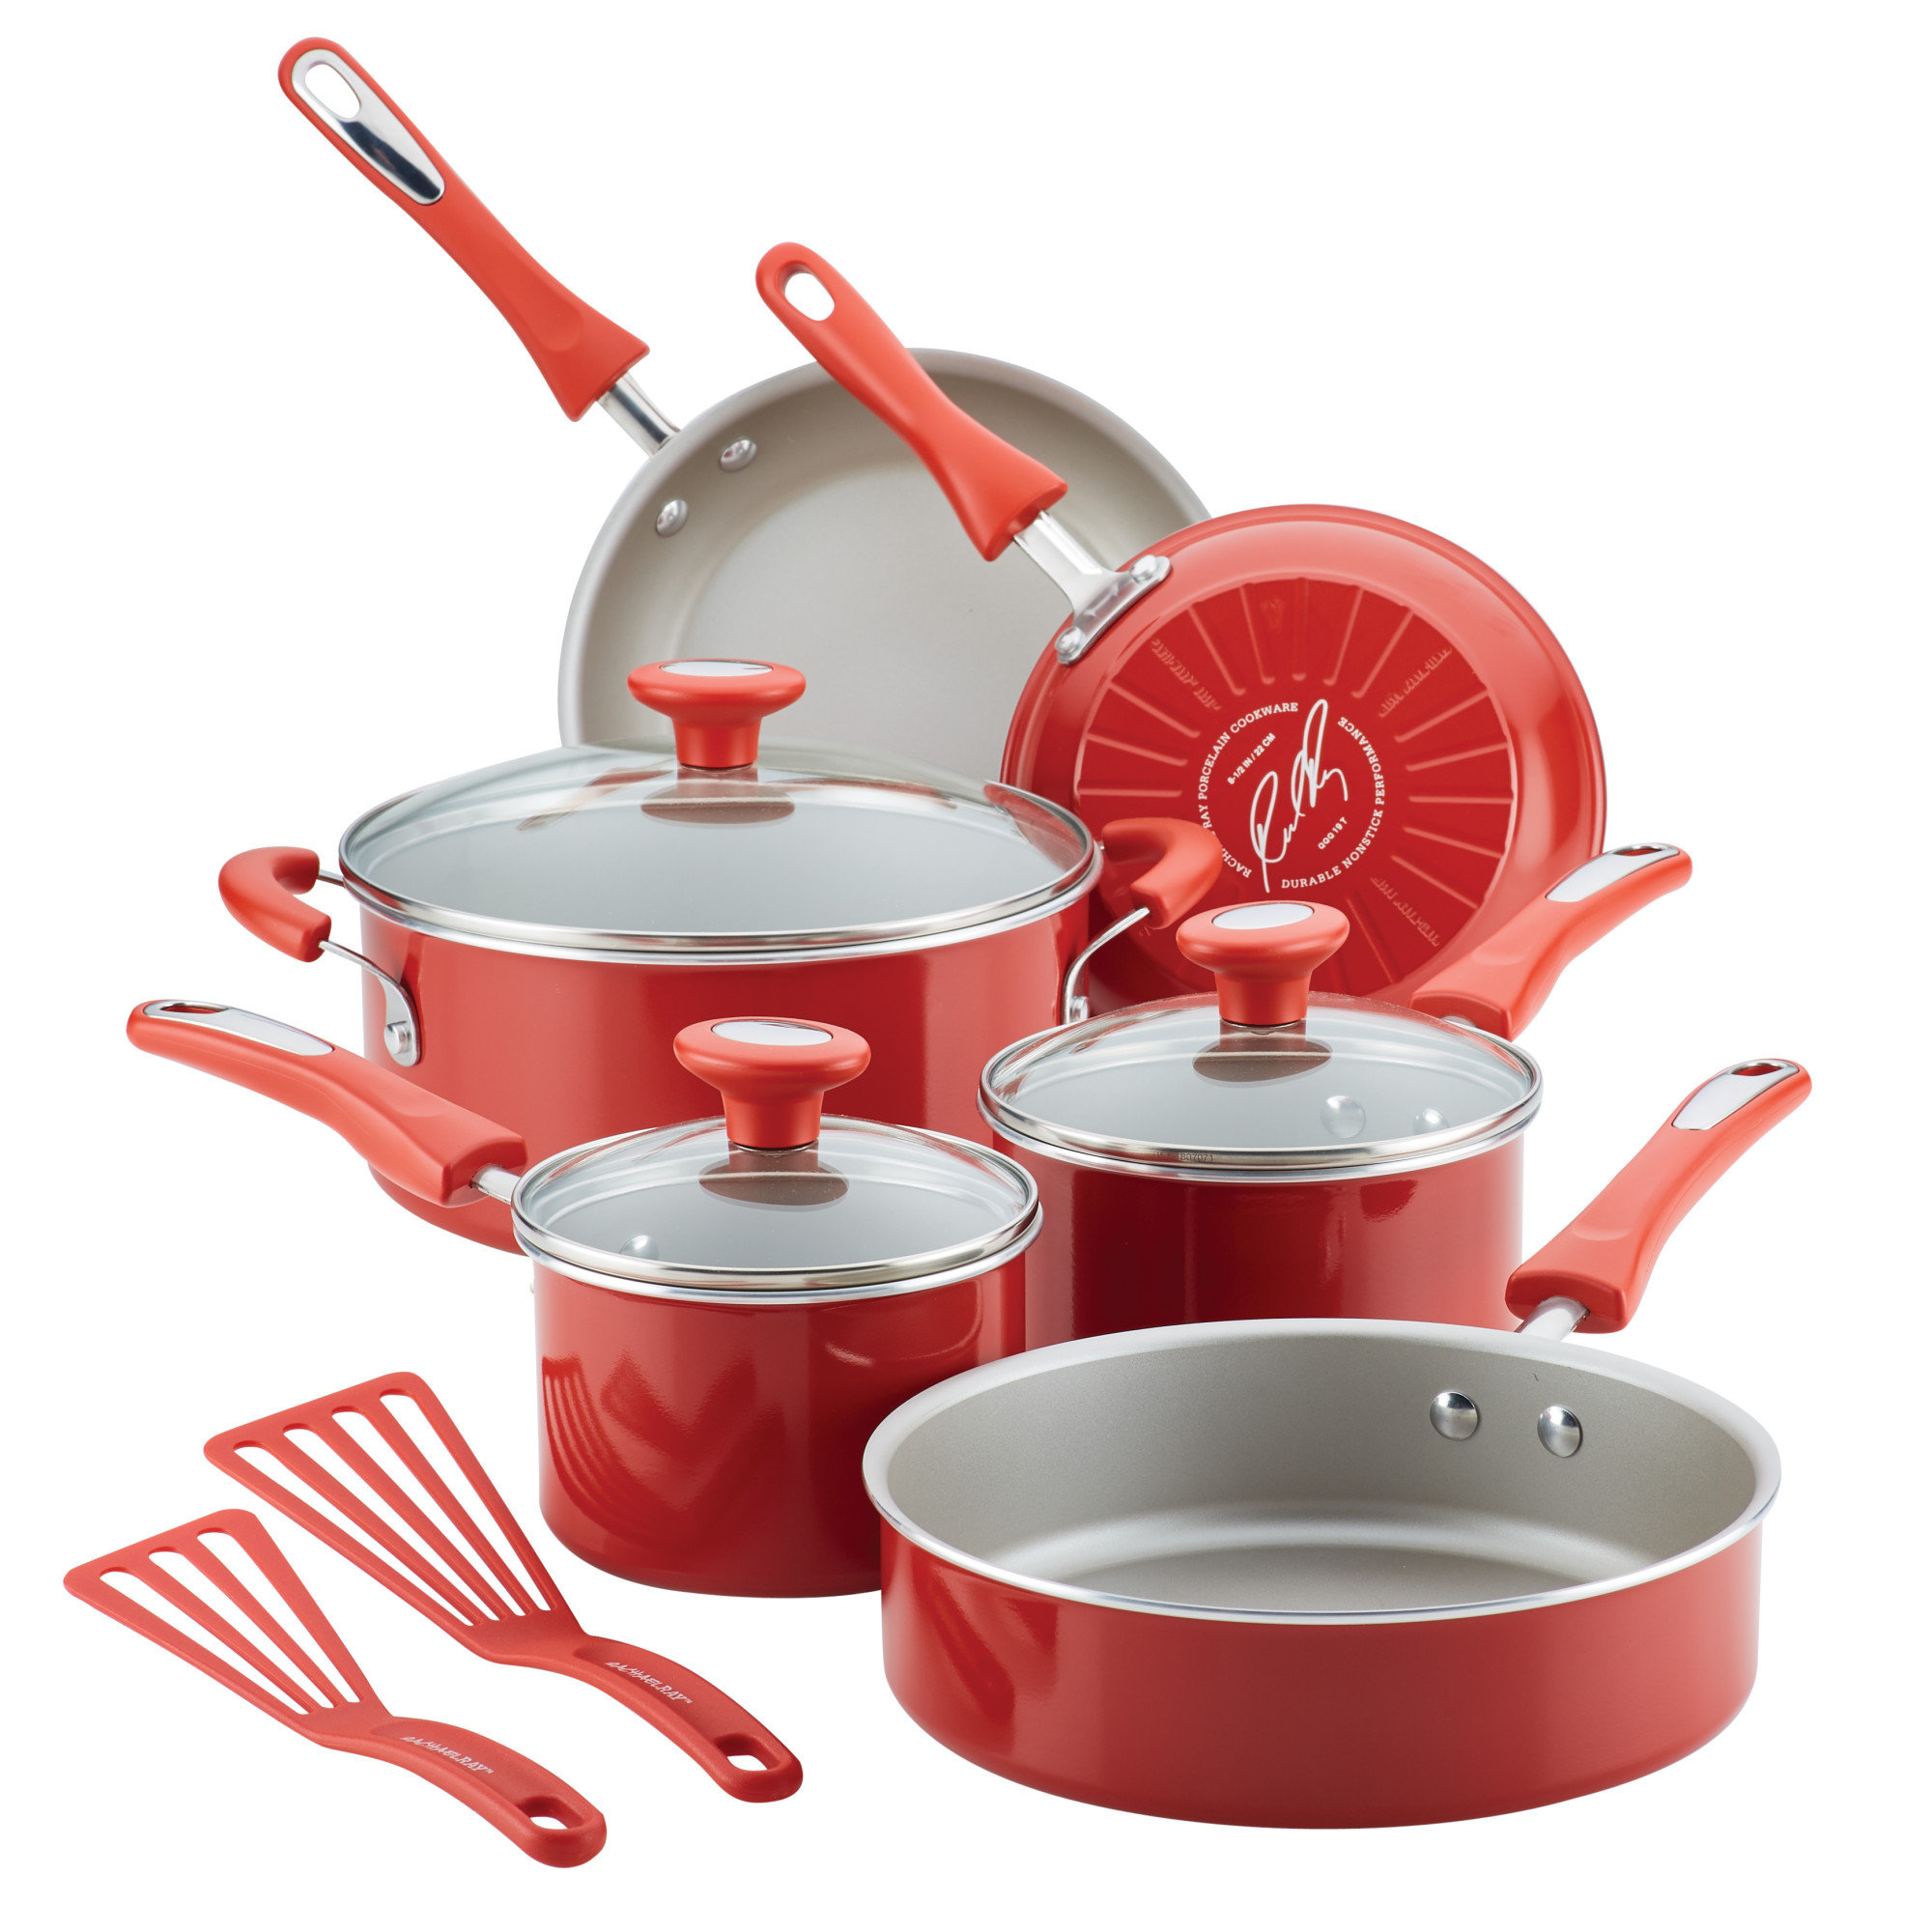 https://assets.wfcdn.com/im/59361586/compr-r85/2397/239727721/get-cooking-nonstick-cookware-pots-and-pans-set-11-piece-red.jpg